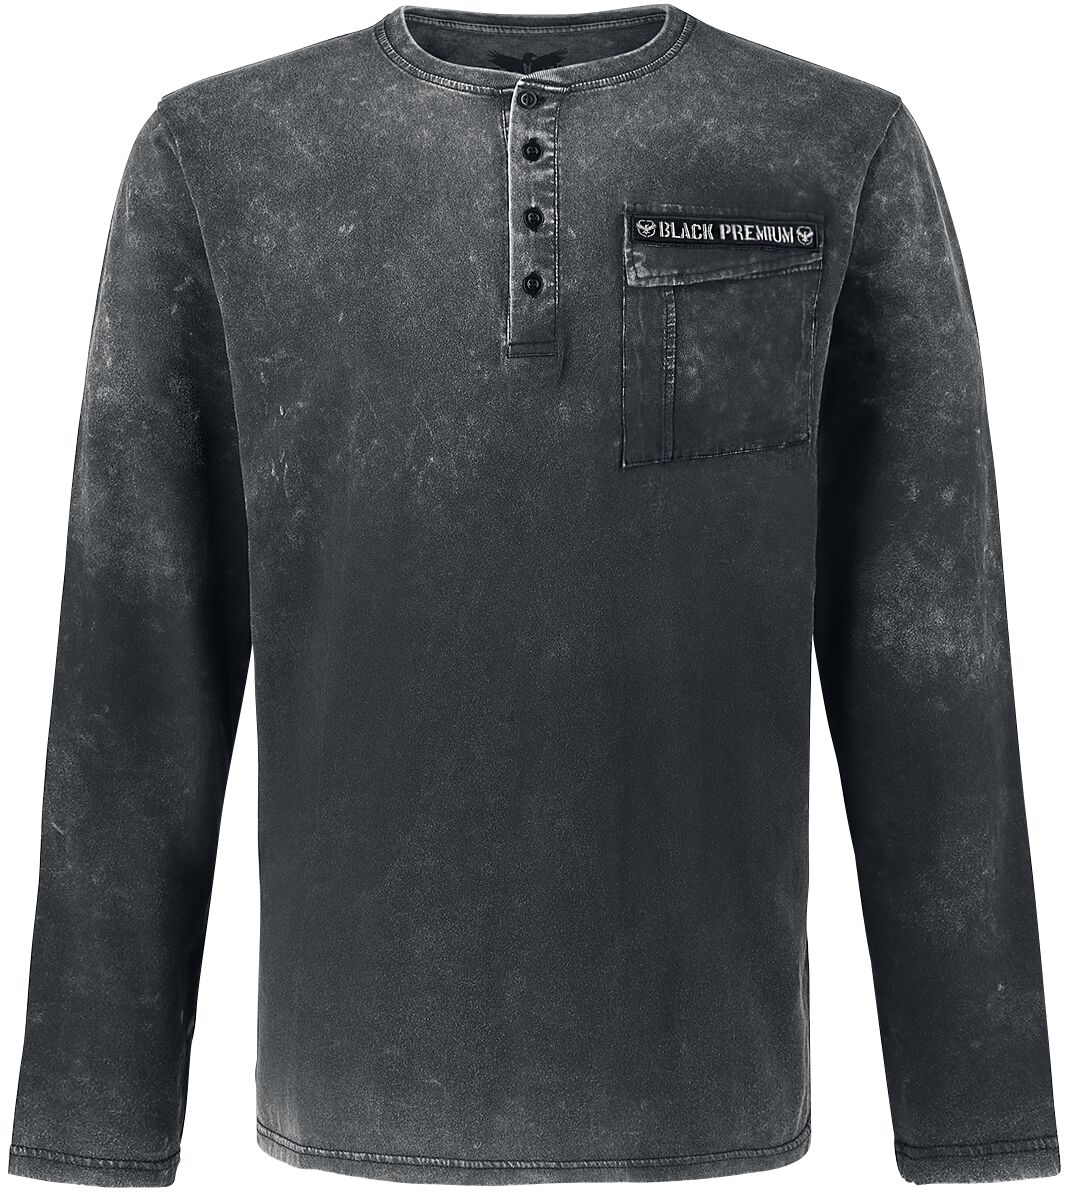 Black Premium by EMP Langarmshirt - Through The Glass - S bis 5XL - für Männer - Größe M - schwarz